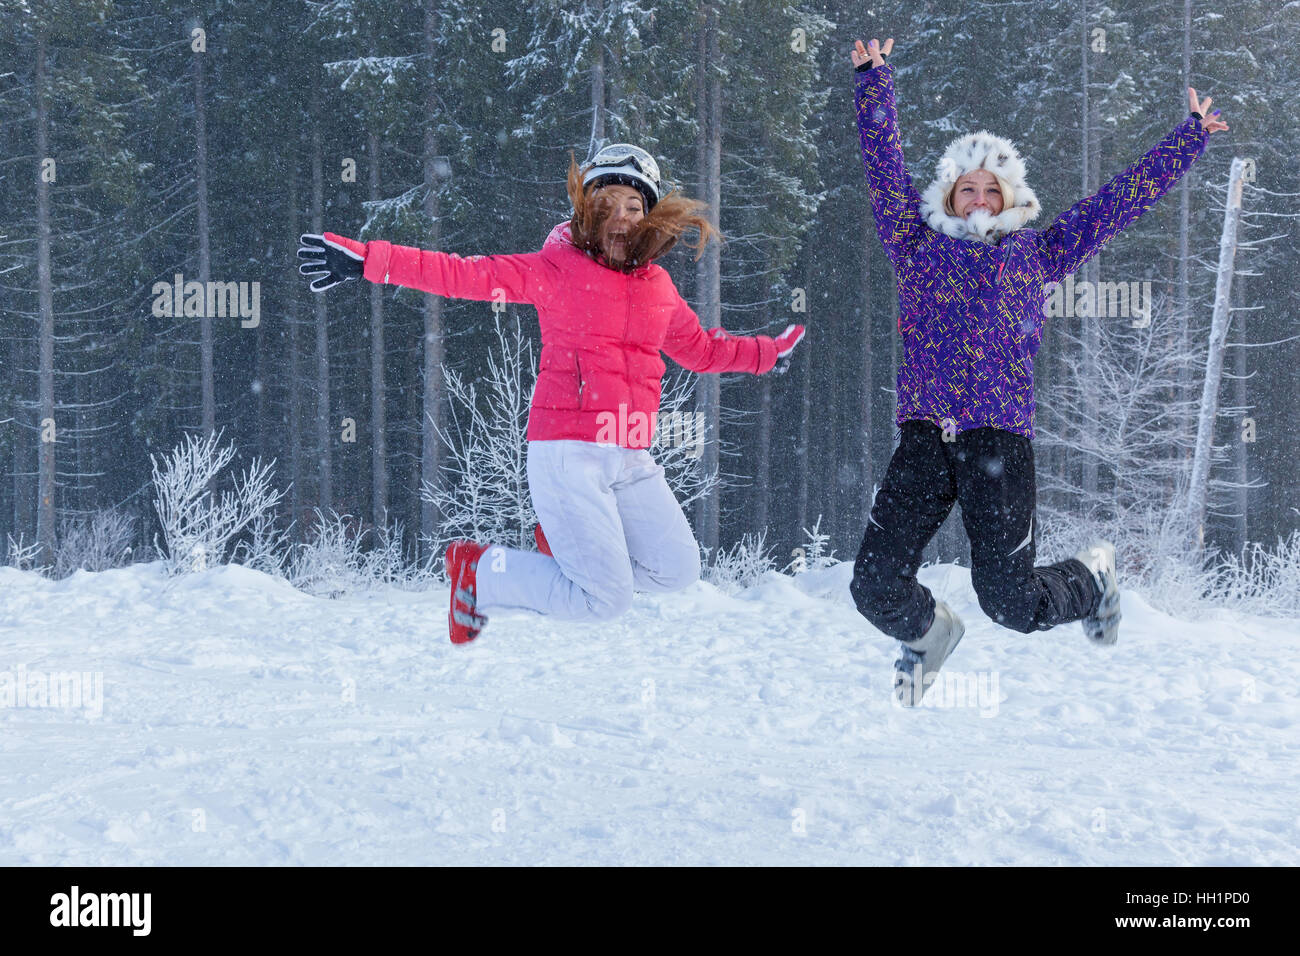 Ukraine Bukovel 17. Dezember 2015 Mädchen springen. Zwei lustige Mädchen springen im Schnee gegen schönen Wald in Bukovel, Ukraine. Stockfoto